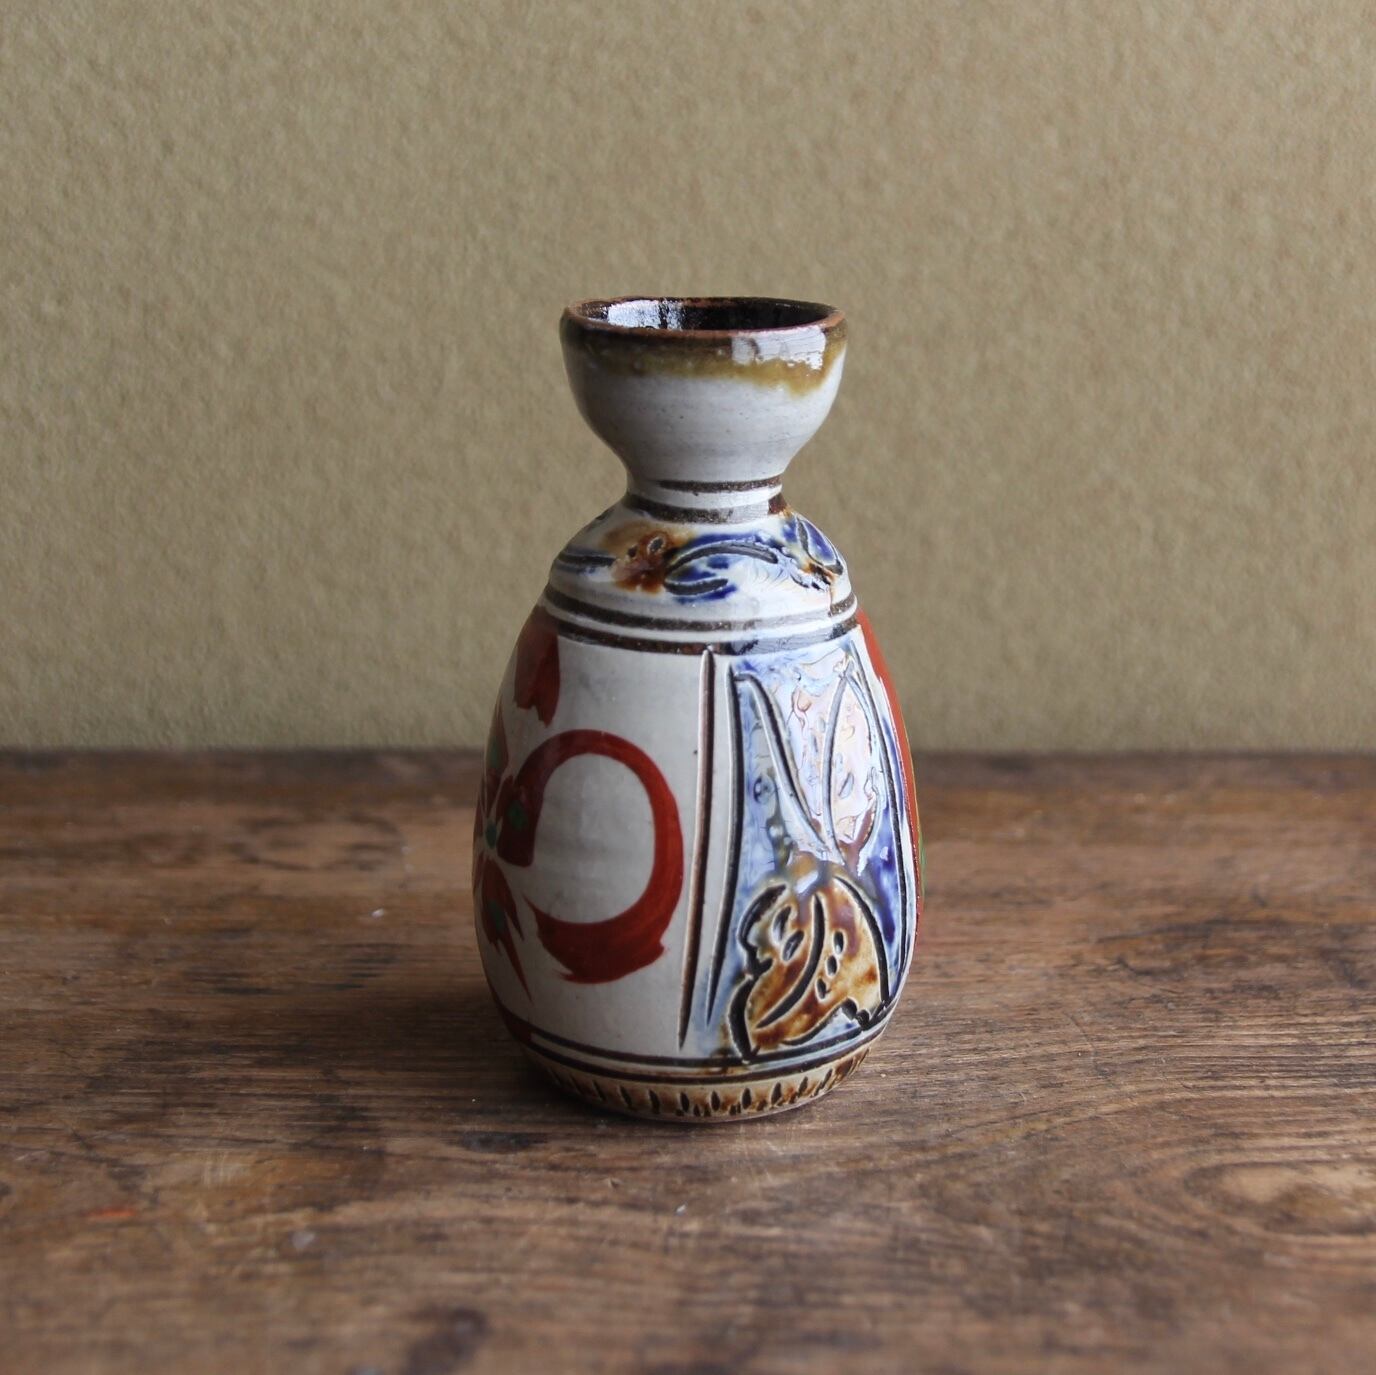 区別は難しいのですが喜名 知花焼 焼締褐釉瓶 徳利 酒器 古美術 琉球美術 古道具 アンティーク